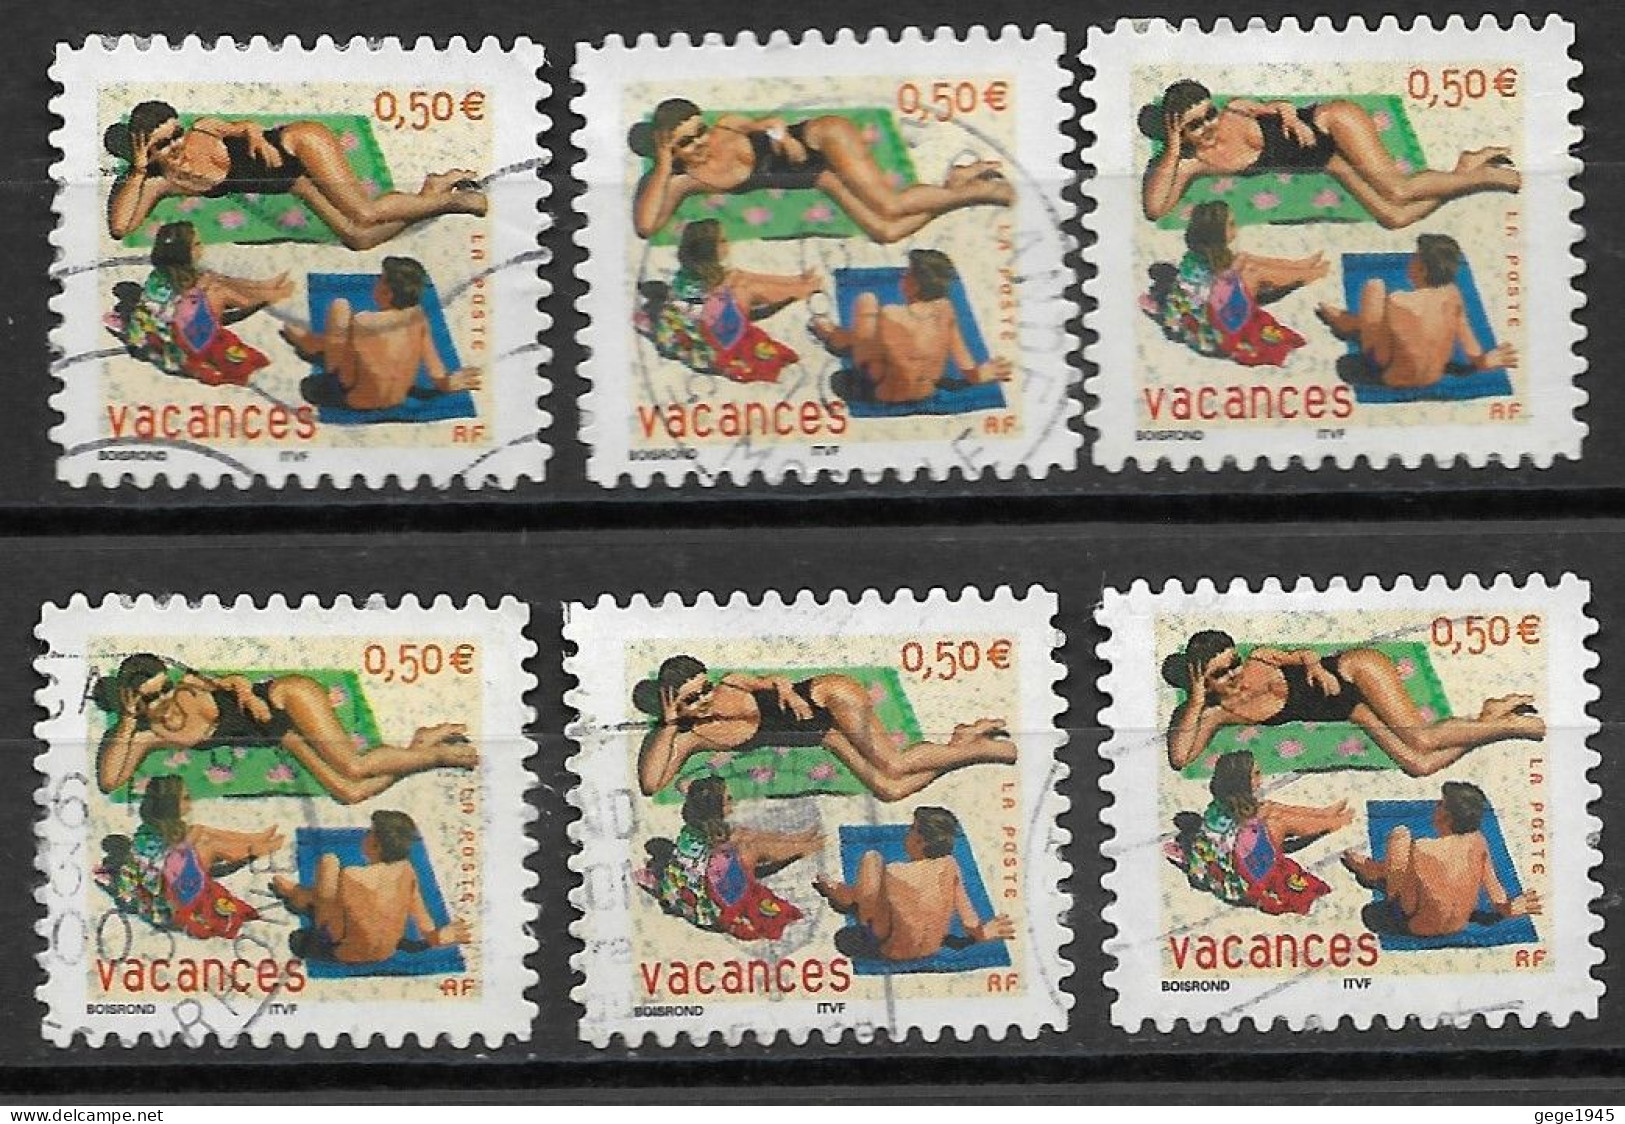 France 2003 Oblitéré  Autoadhésif  N° 35  Ou  N° 3578  Vacances   ( 6  Exemplaires ) - Used Stamps